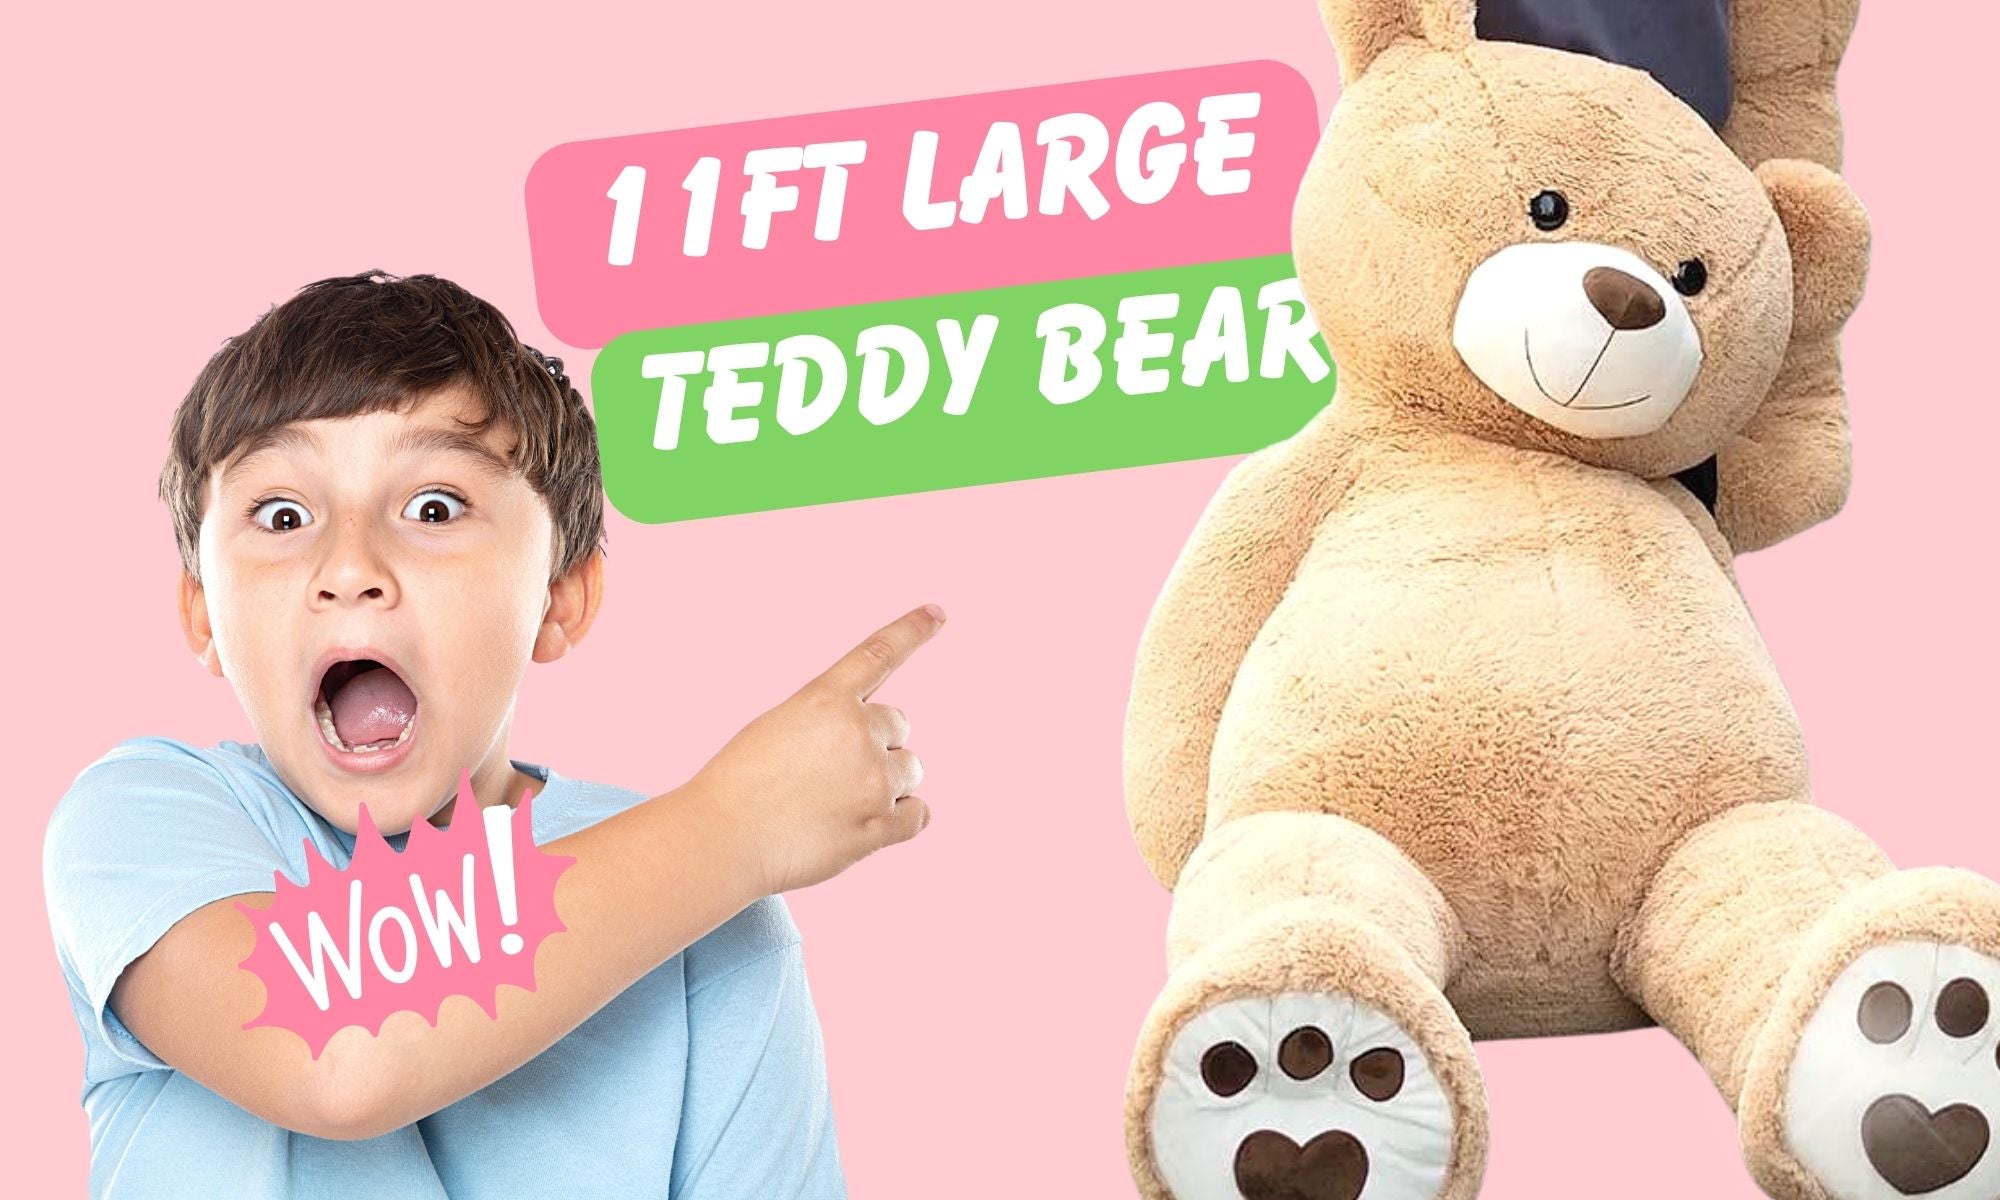 World's Largest Teddy Bear | 11ft Giant Teddy Bear 